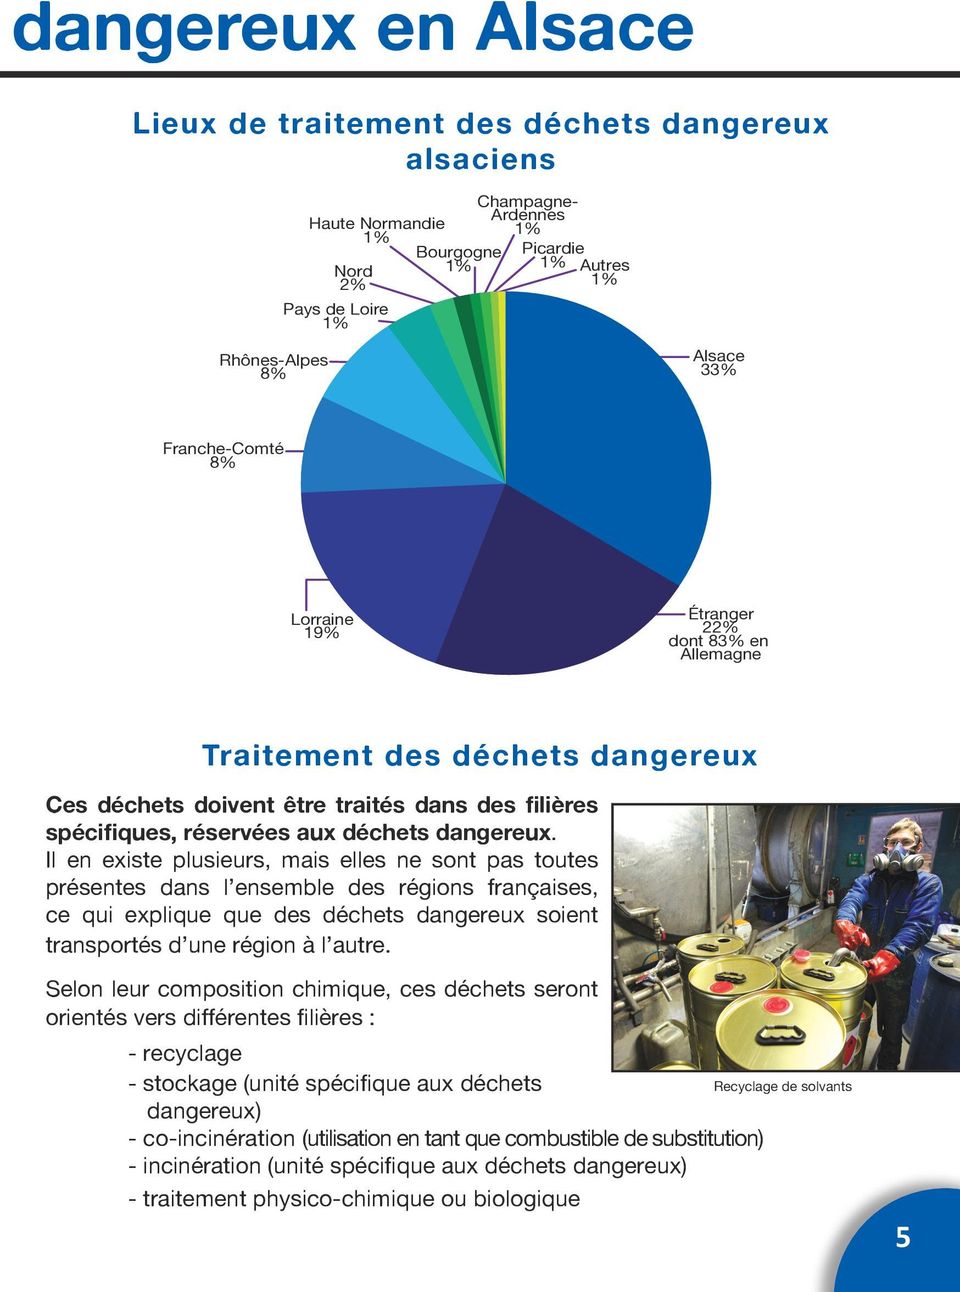 Il en existe plusieurs, mais elles ne sont pas toutes présentes dans l ensemble des régions françaises, ce qui explique que des déchets dangereux soient transportés d une région à l autre.